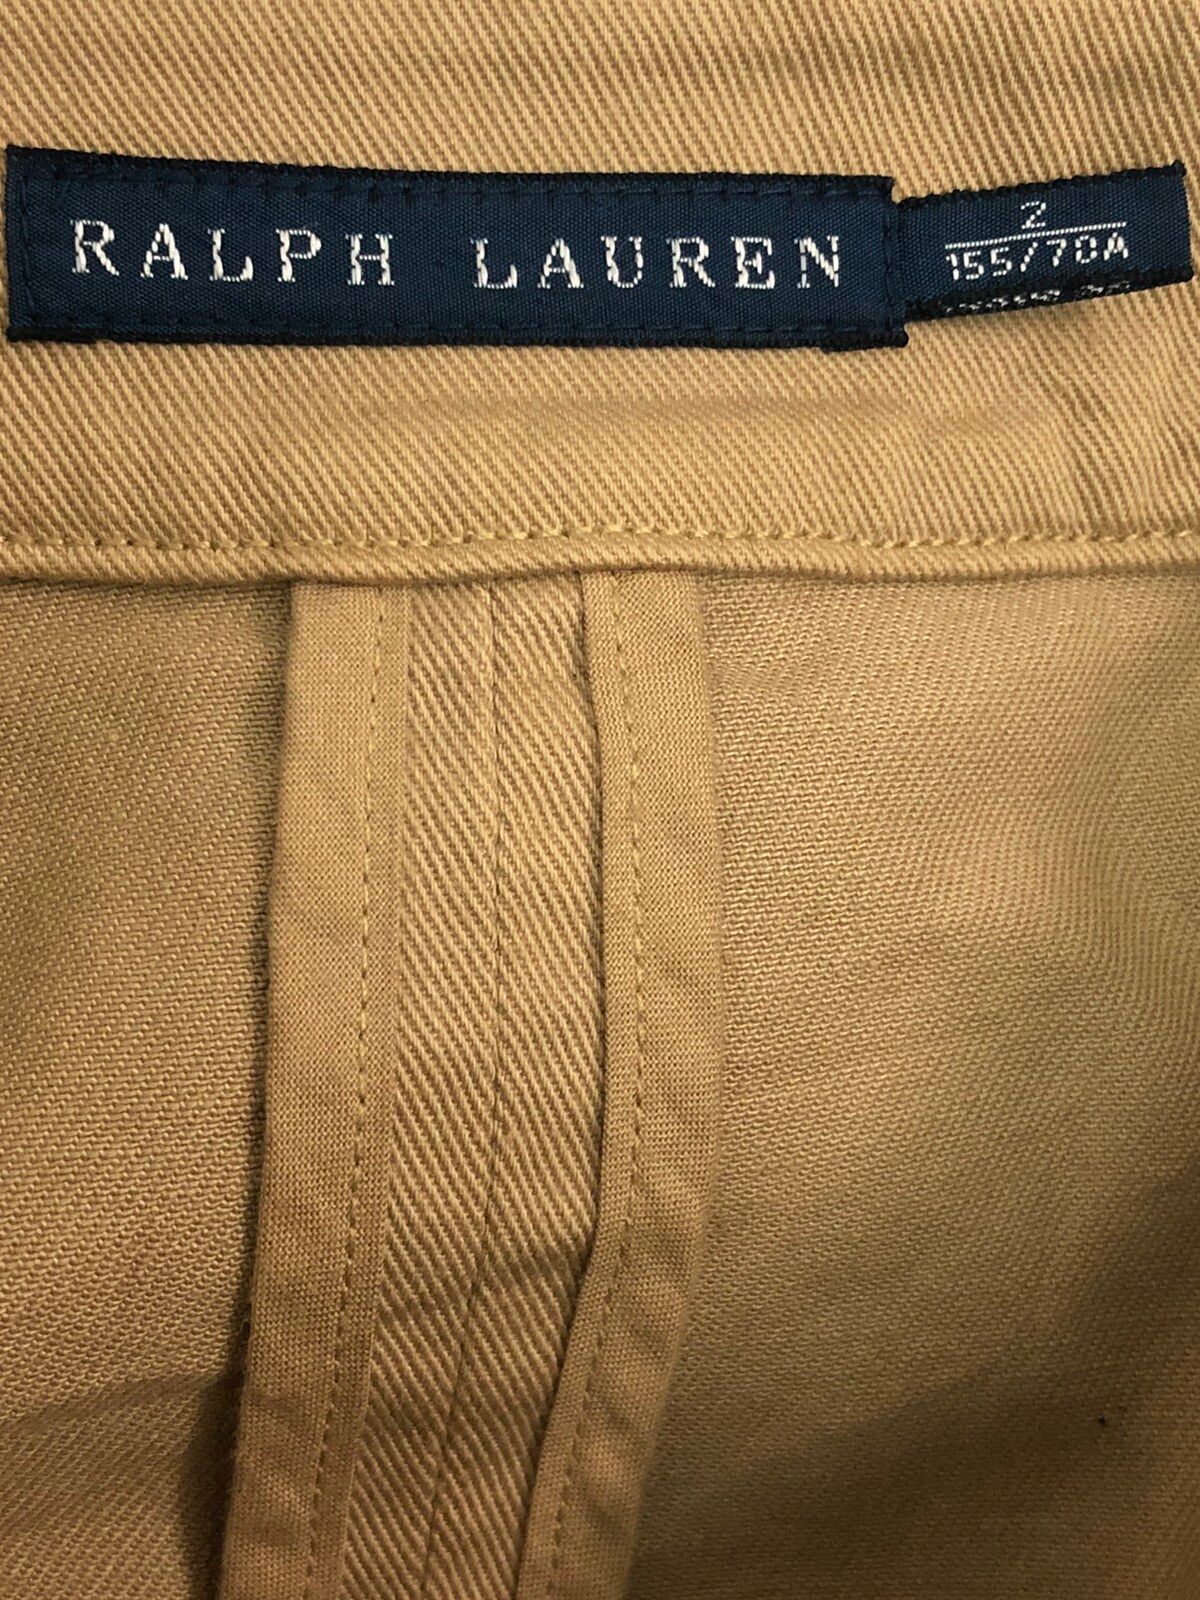 Polo Ralph Lauren Skirt - 3